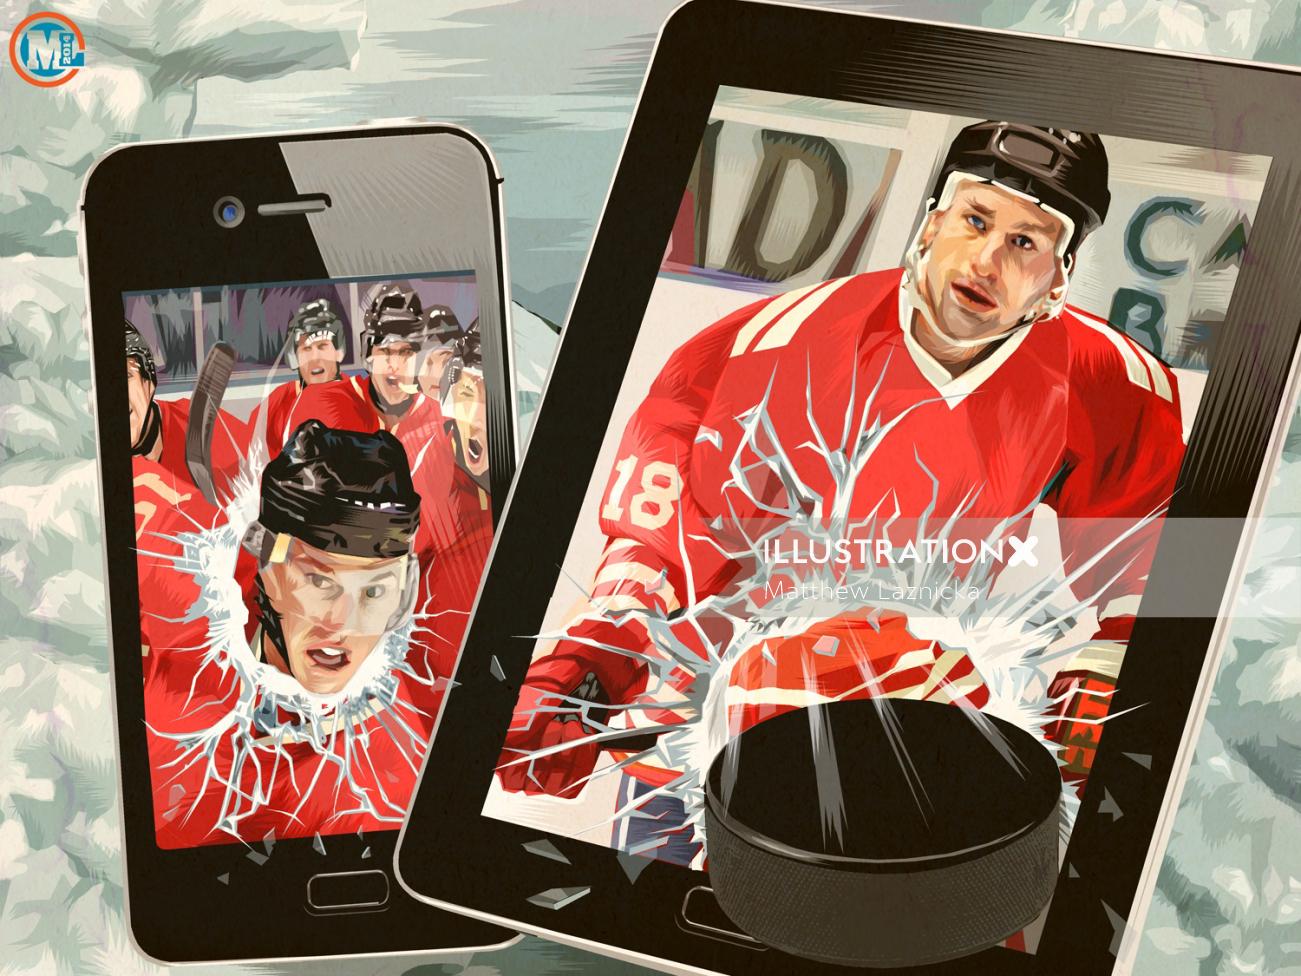 Image graphique de hockey sur glace sur appareil mobile